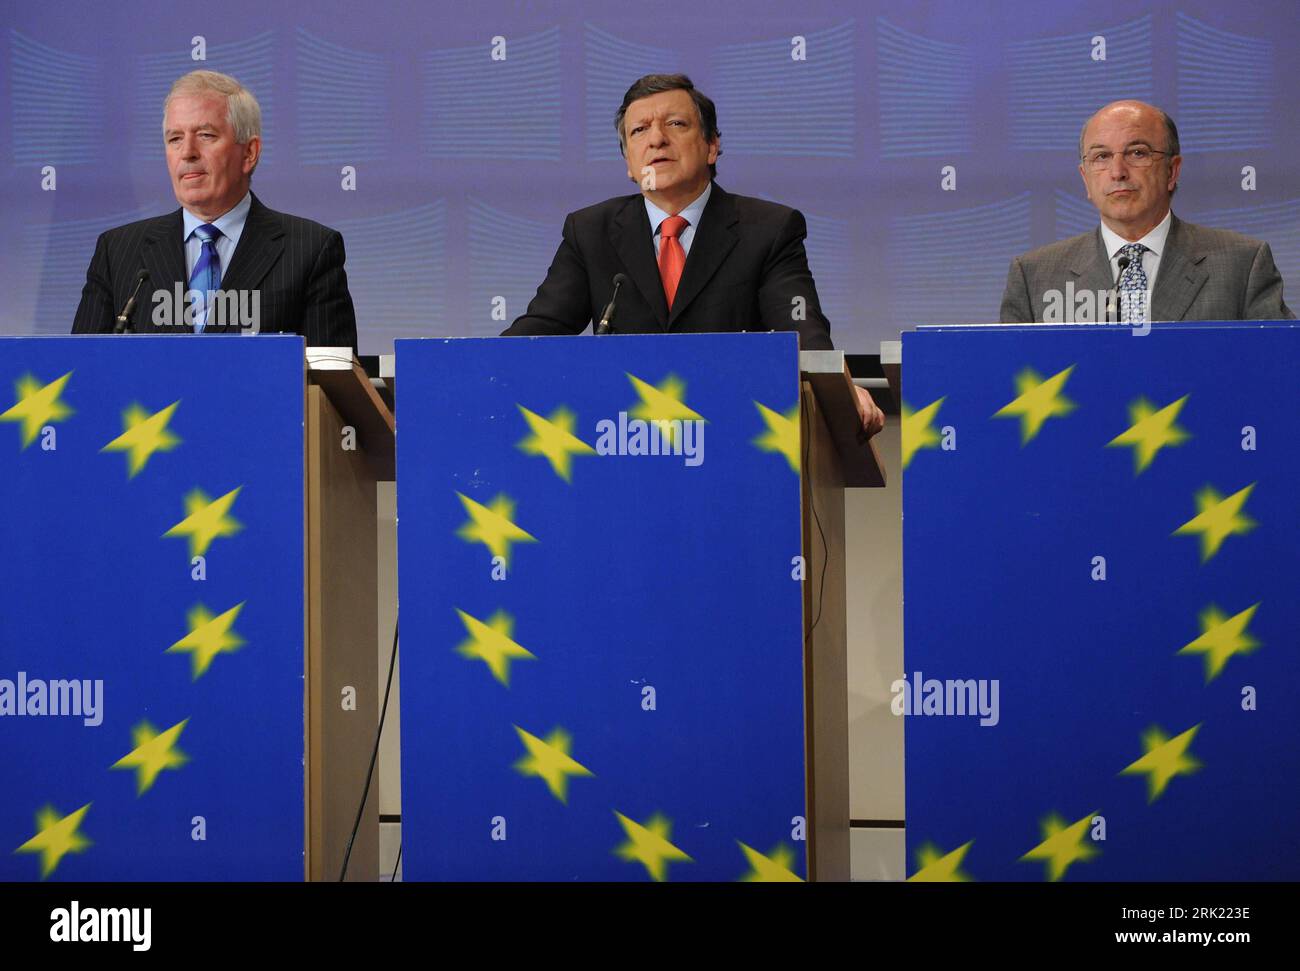 Bildnummer: 53032285  Datum: 25.05.2009  Copyright: imago/Xinhua V.l.n.r.: Charlie Mccreevy (Irland/EU-Kommissar Binnenmarkt), Jose Manuel Barroso (Portugal/Kommissionspräsident) und Joaquin Almunia (Spanien/EU-Kommissar Wirtschaft und Währung) anlässlich einer Pressekonferenz zum Thema - European Financial Supervision Package - in Brüssel - PUBLICATIONxNOTxINxCHN, Personen , premiumd; 2009, Brüssel, Politik, , Pressekonferenz , Pressetermin; , quer, Kbdig, Gruppenbild, Randbild, People    Bildnummer 53032285 Date 25 05 2009 Copyright Imago XINHUA V l n r Charlie Mccreevy Ireland EU Commission Stock Photo